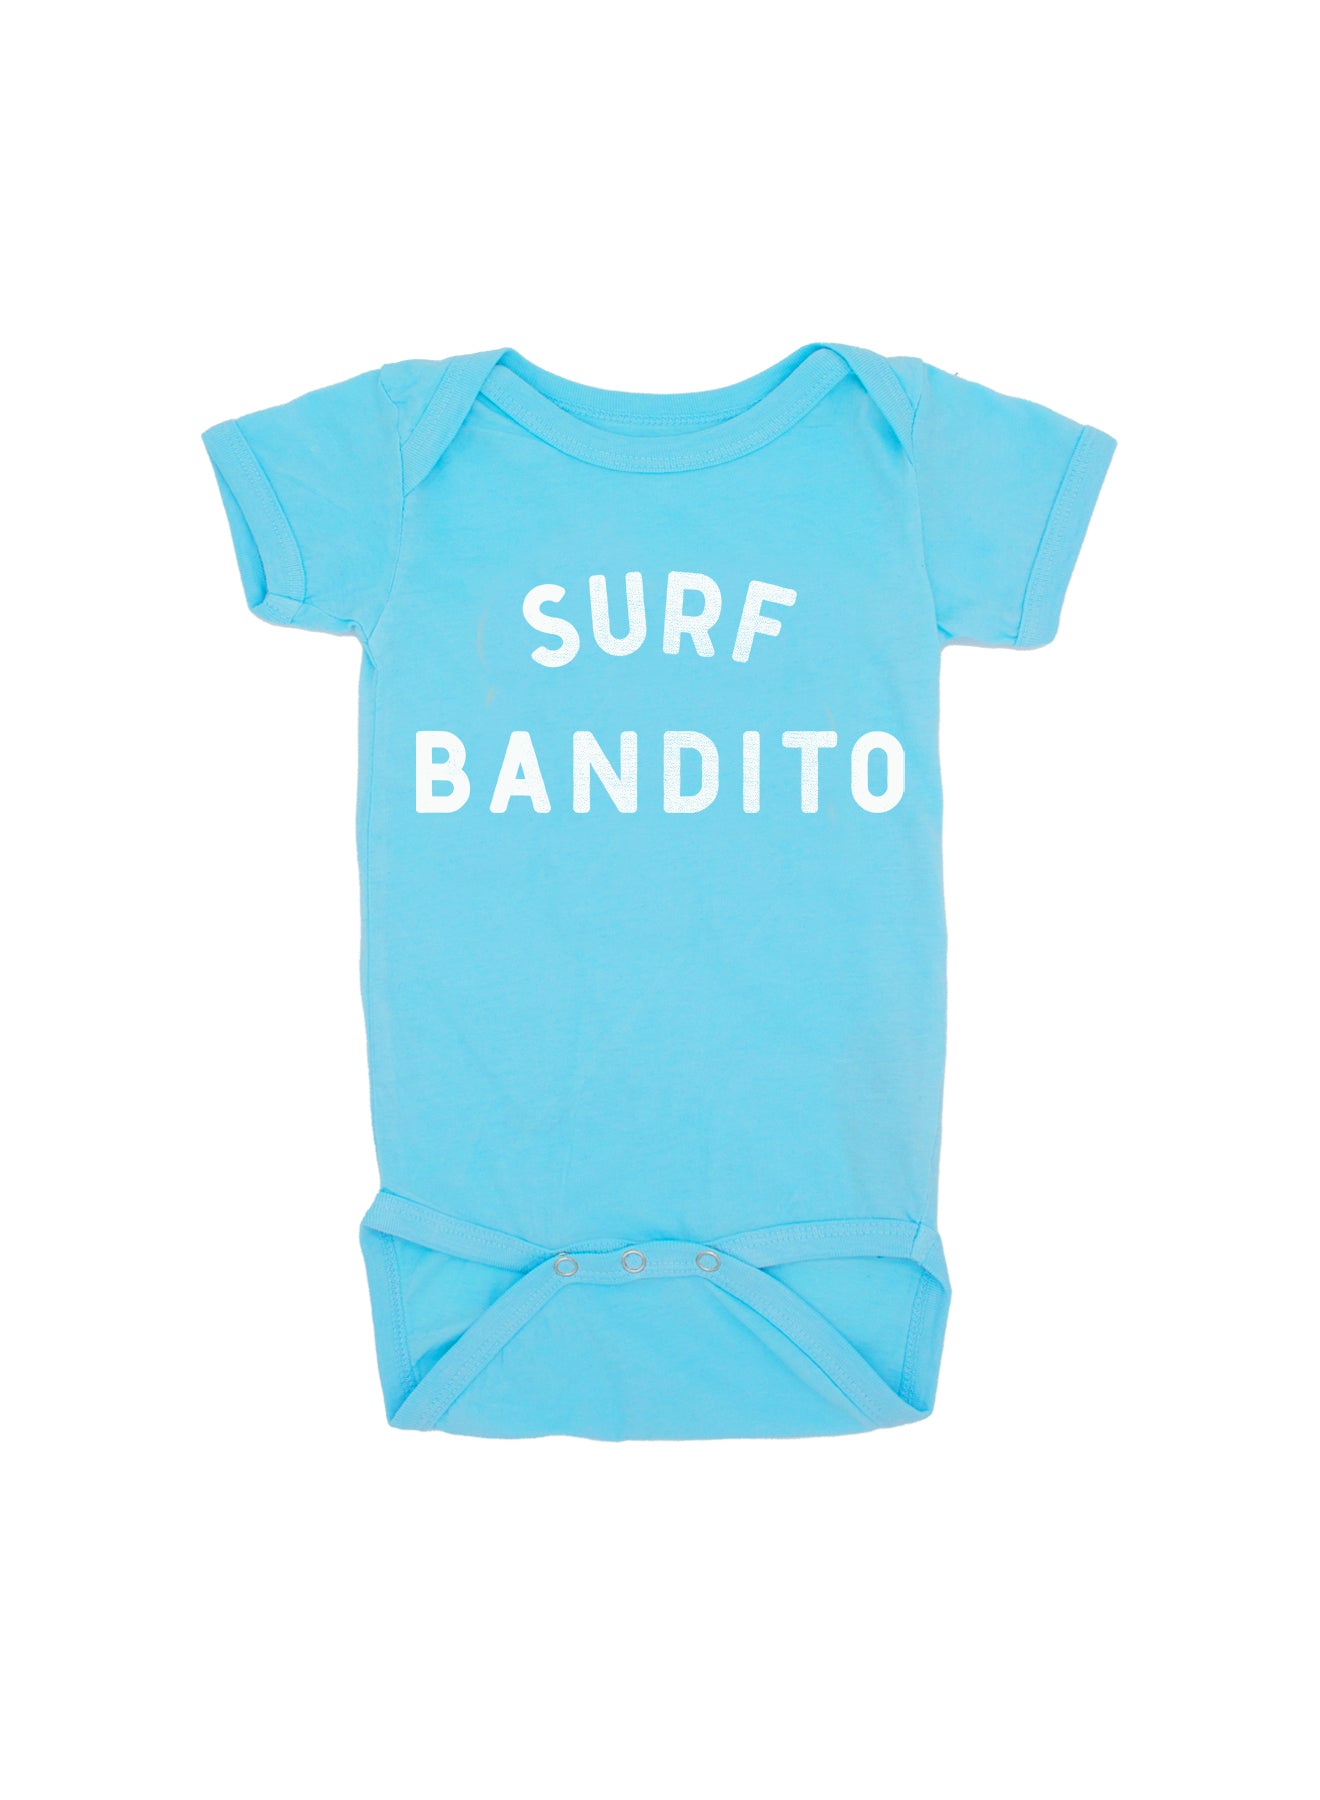 Surf Bandito Onesie